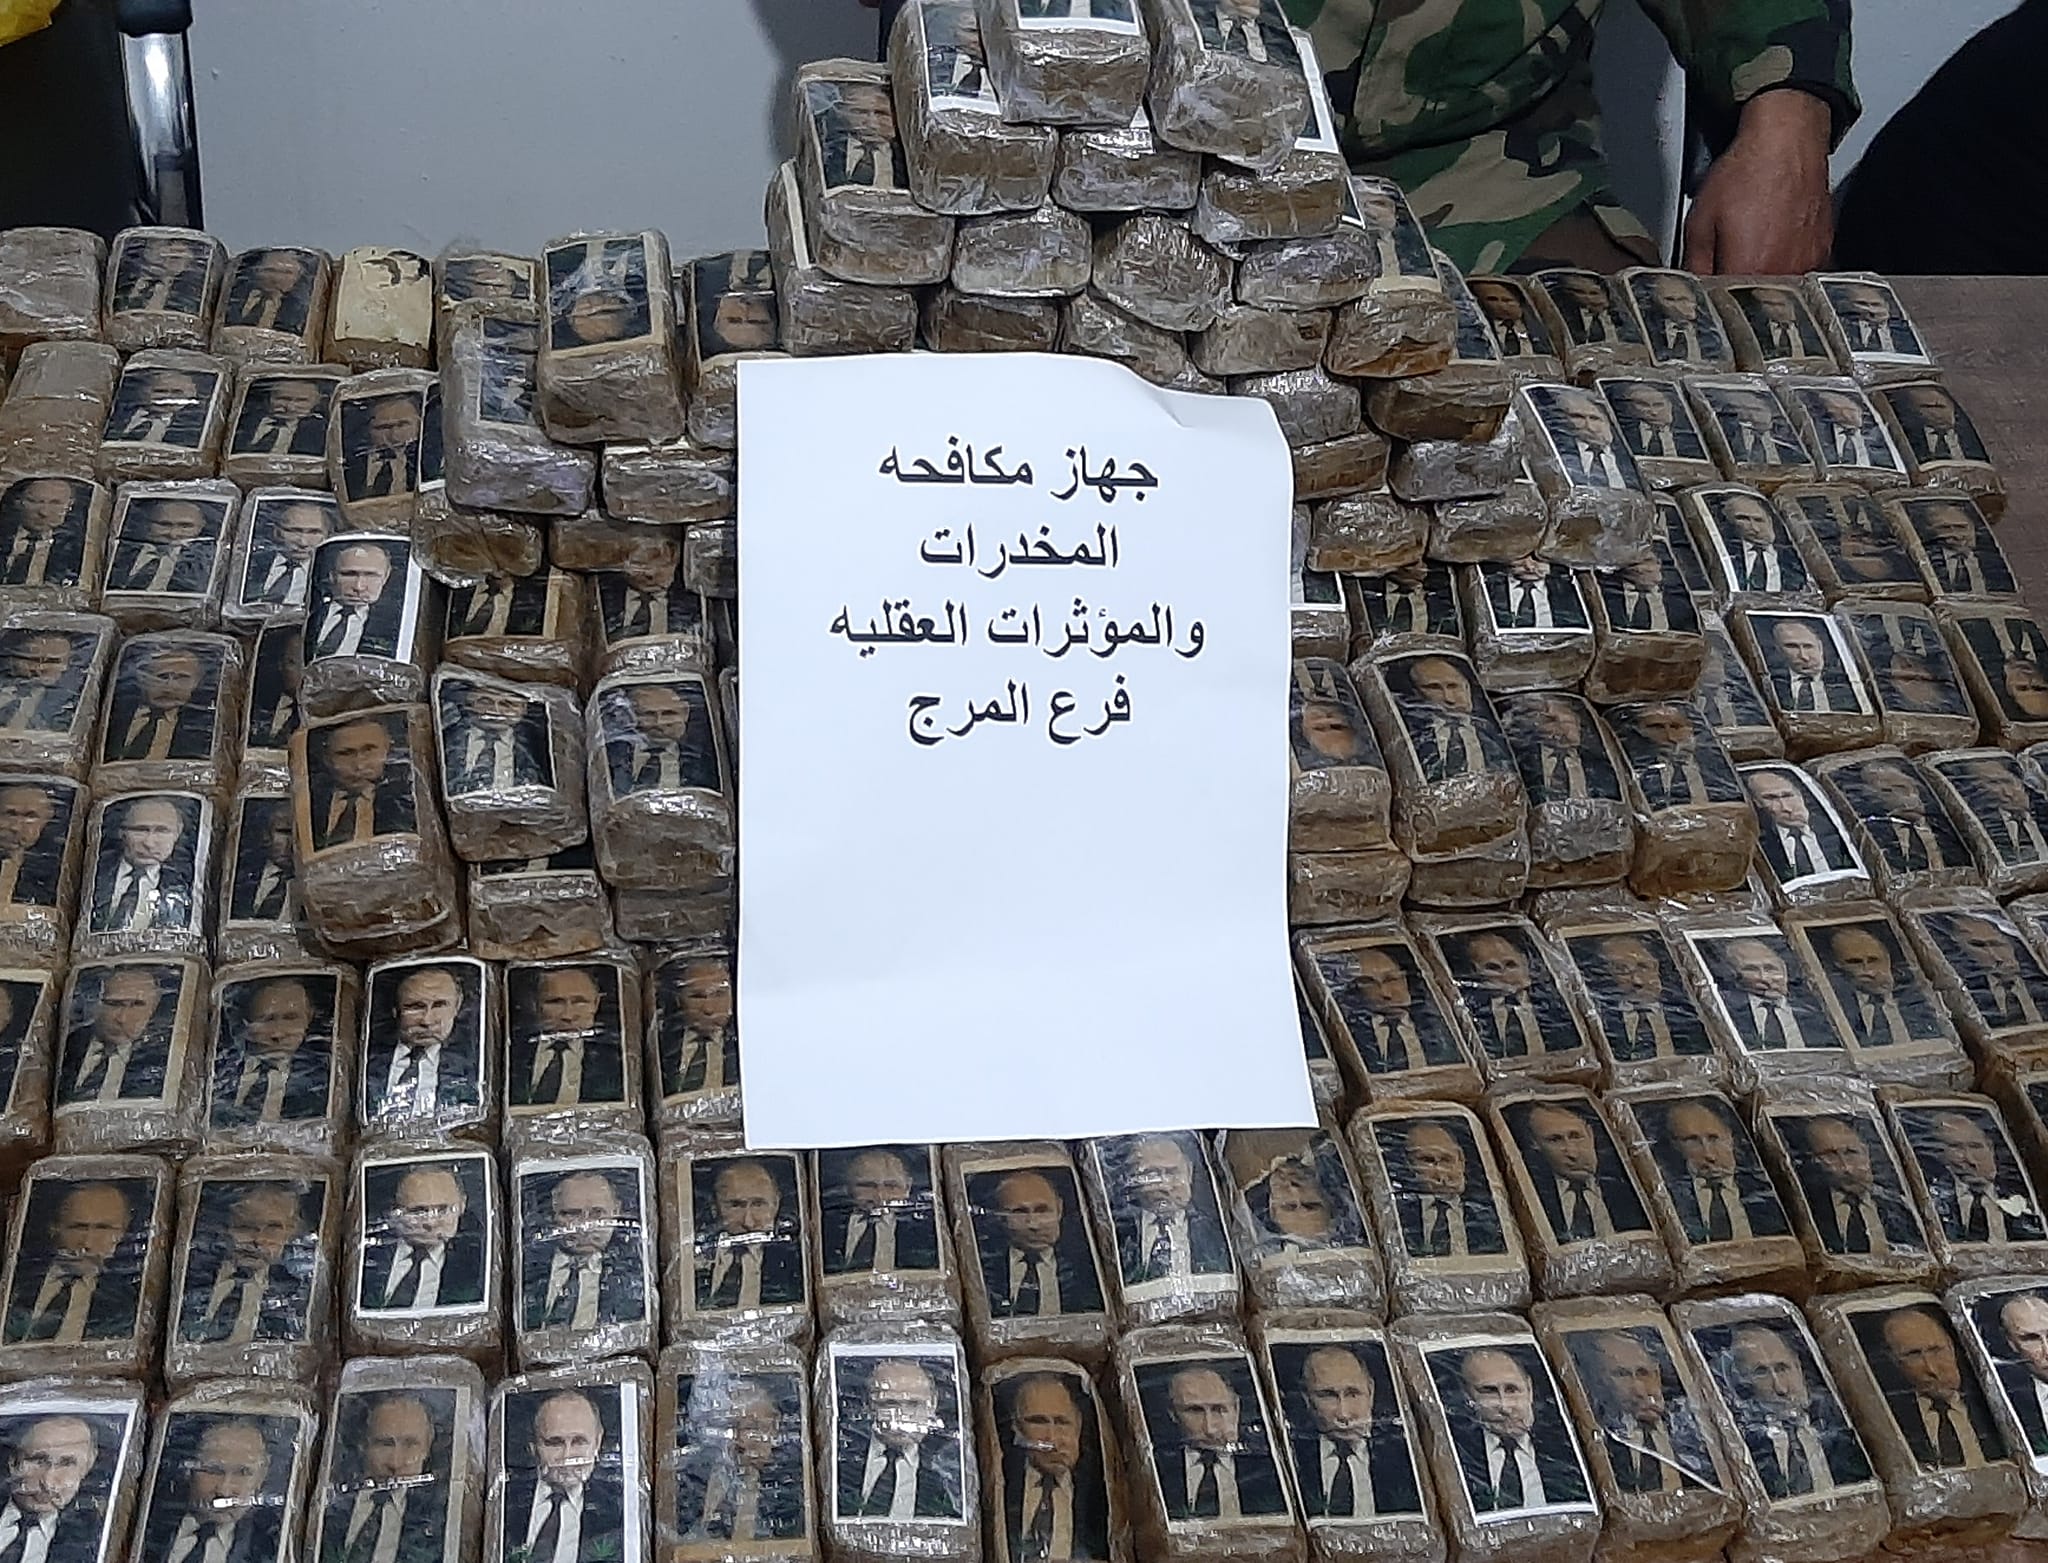 В Лівії знайшли партію наркотику з портретом Путіна / фото Libya Press.